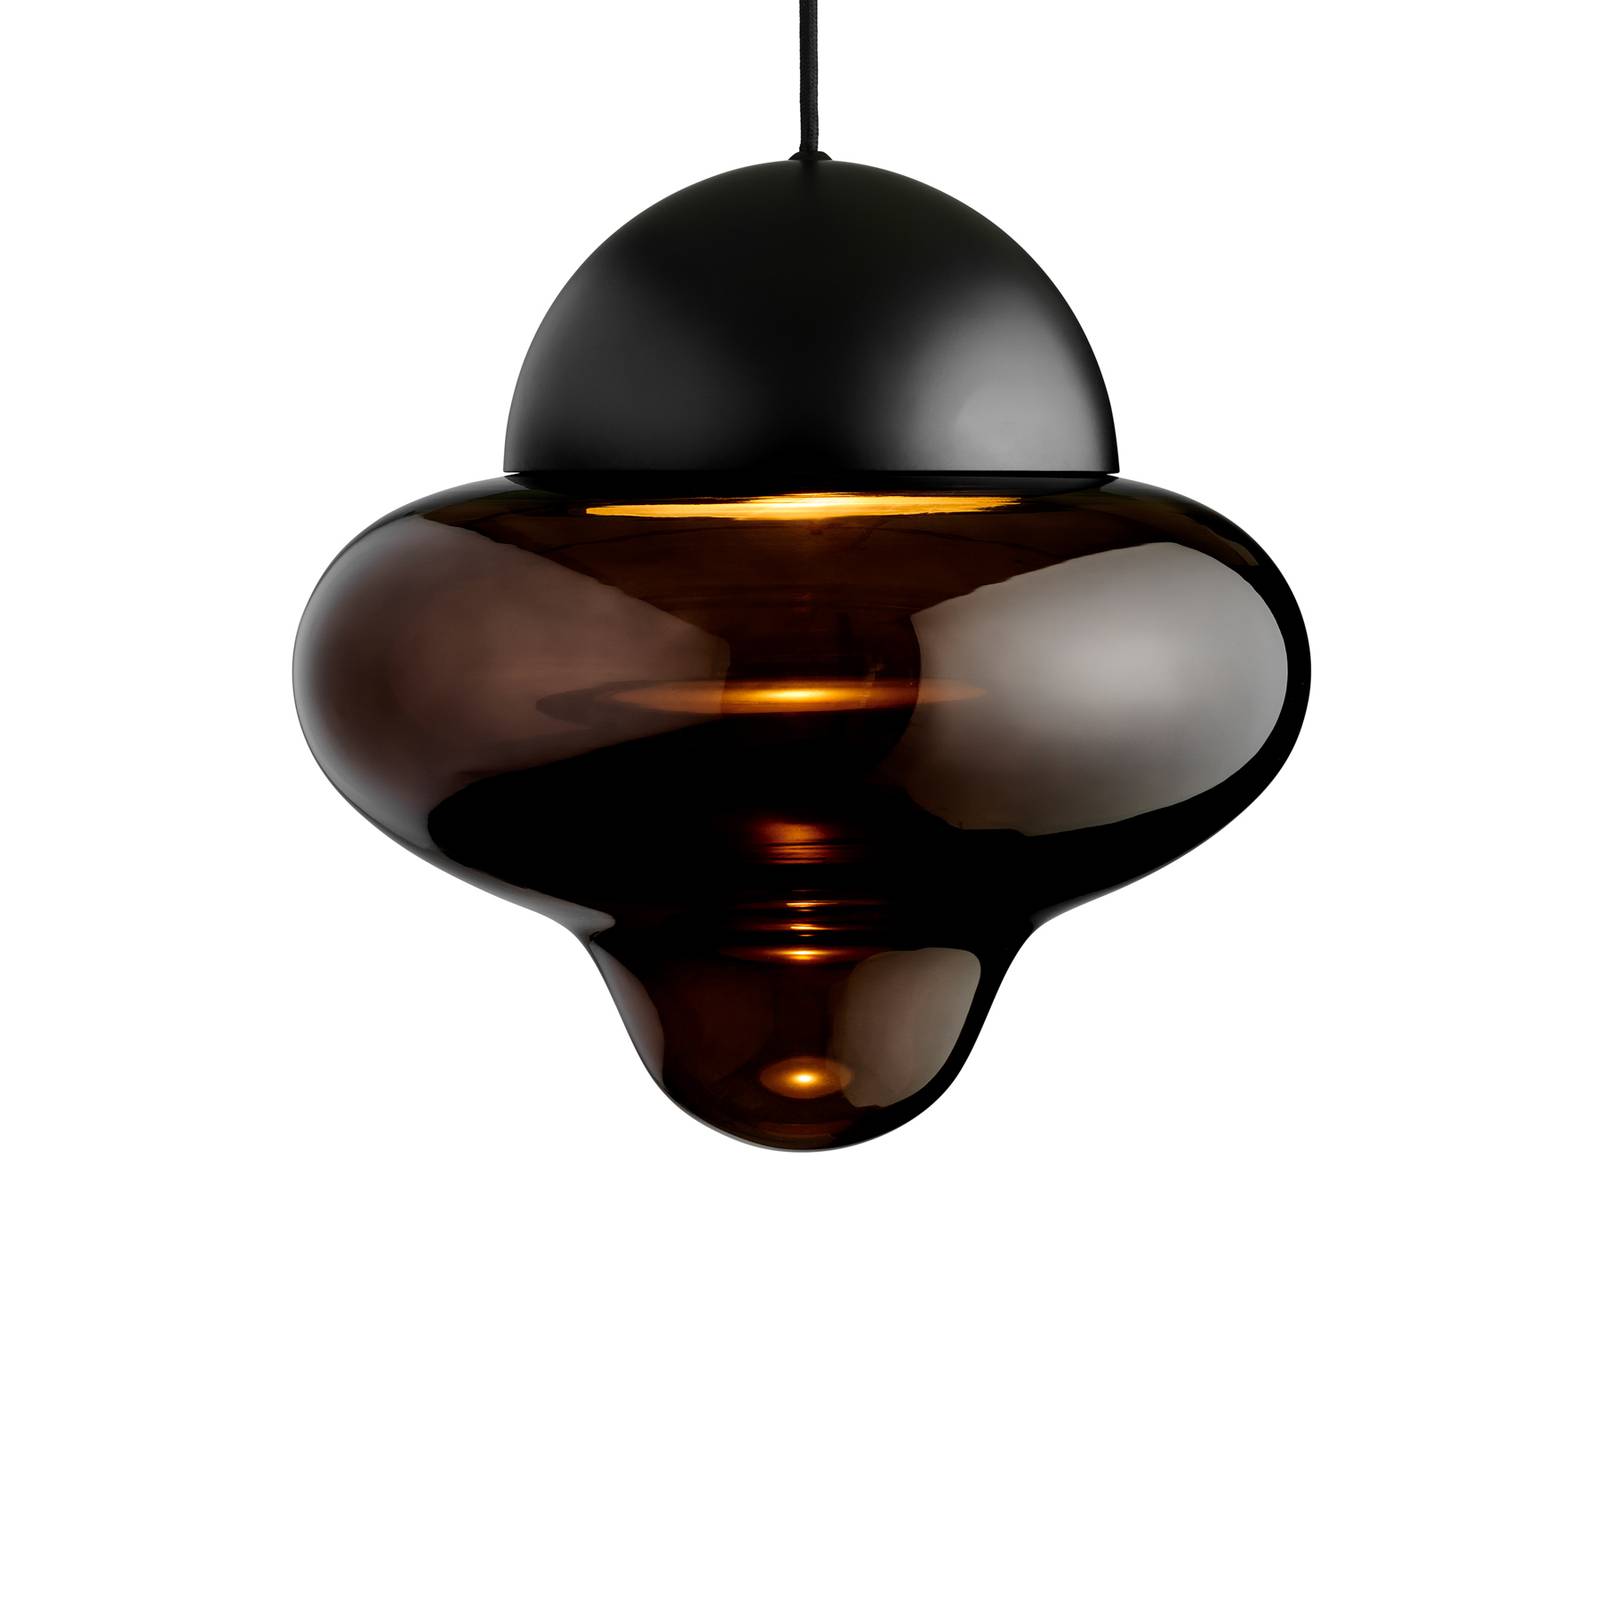 LED-Hängeleuchte Nutty XL, braun / schwarz, Ø 30 cm, Glas von DESIGN BY US